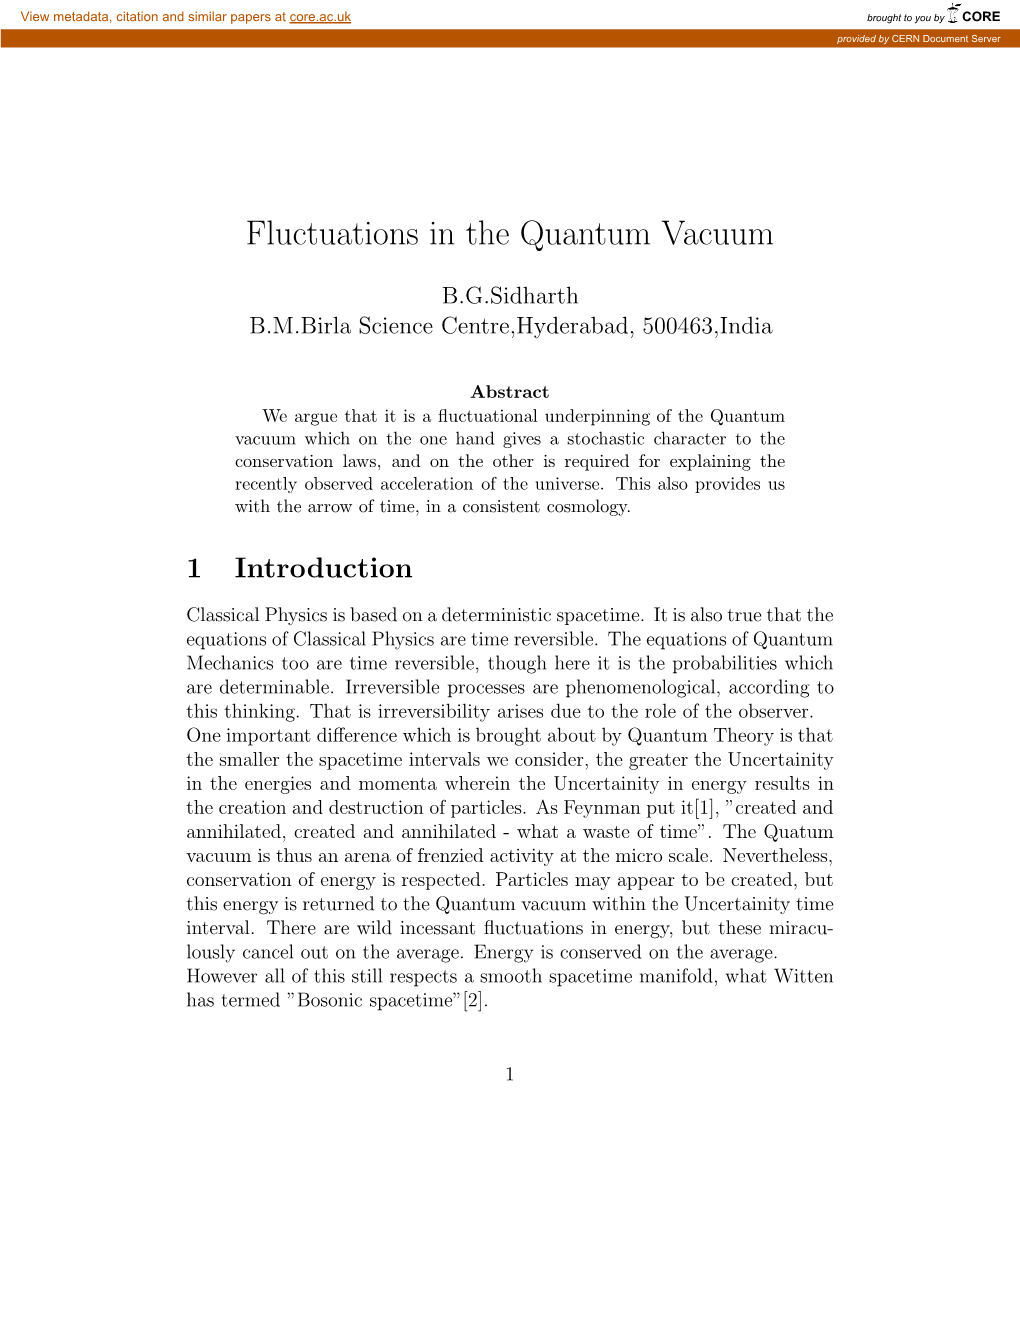 Fluctuations in the Quantum Vacuum